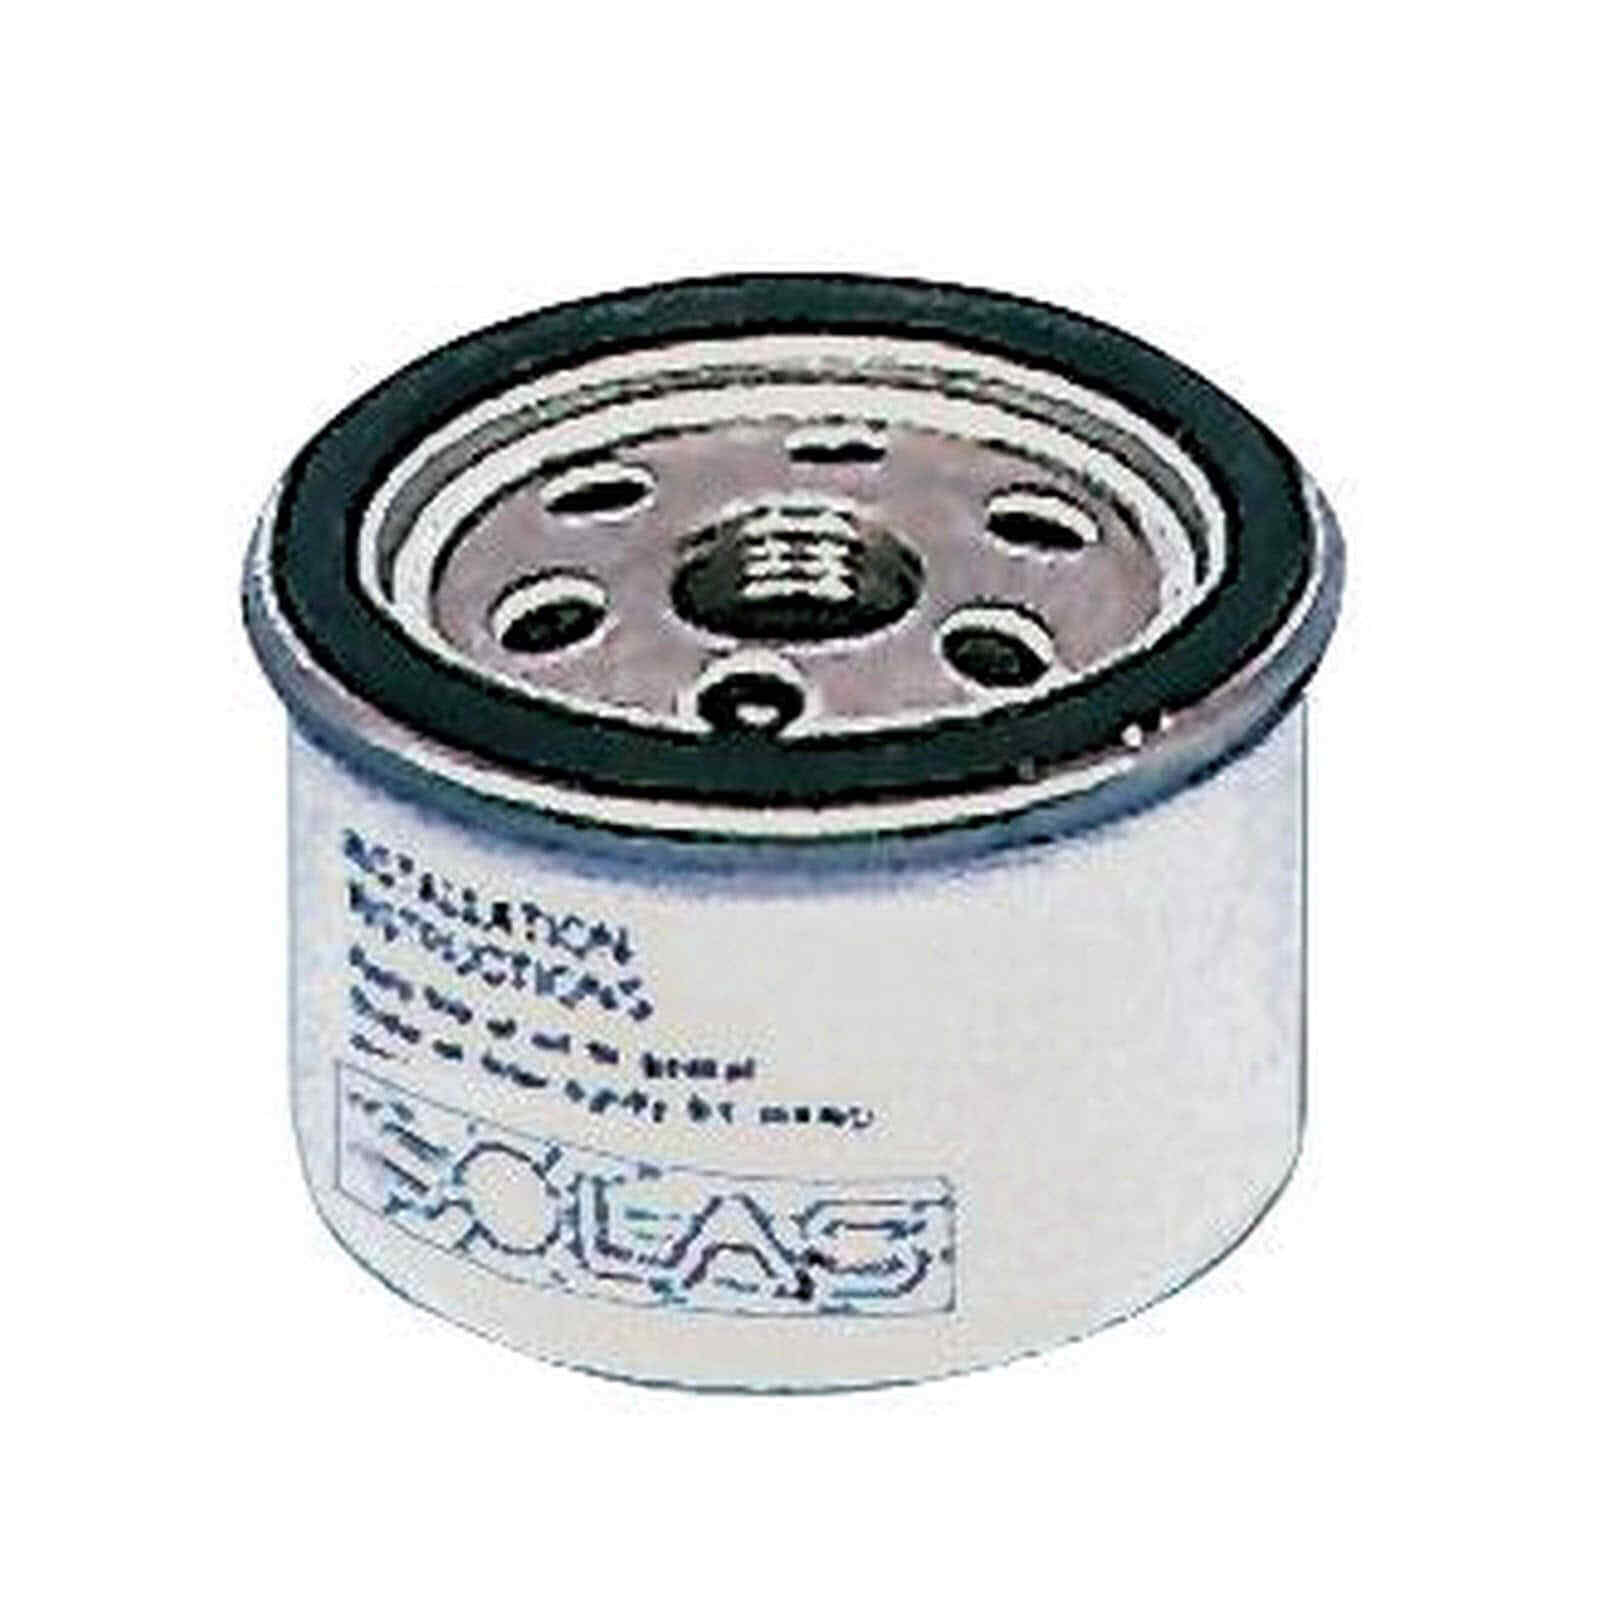 Yanmar fuel filter - 1 PZ Osculati 17.508.12 - 1750812 -